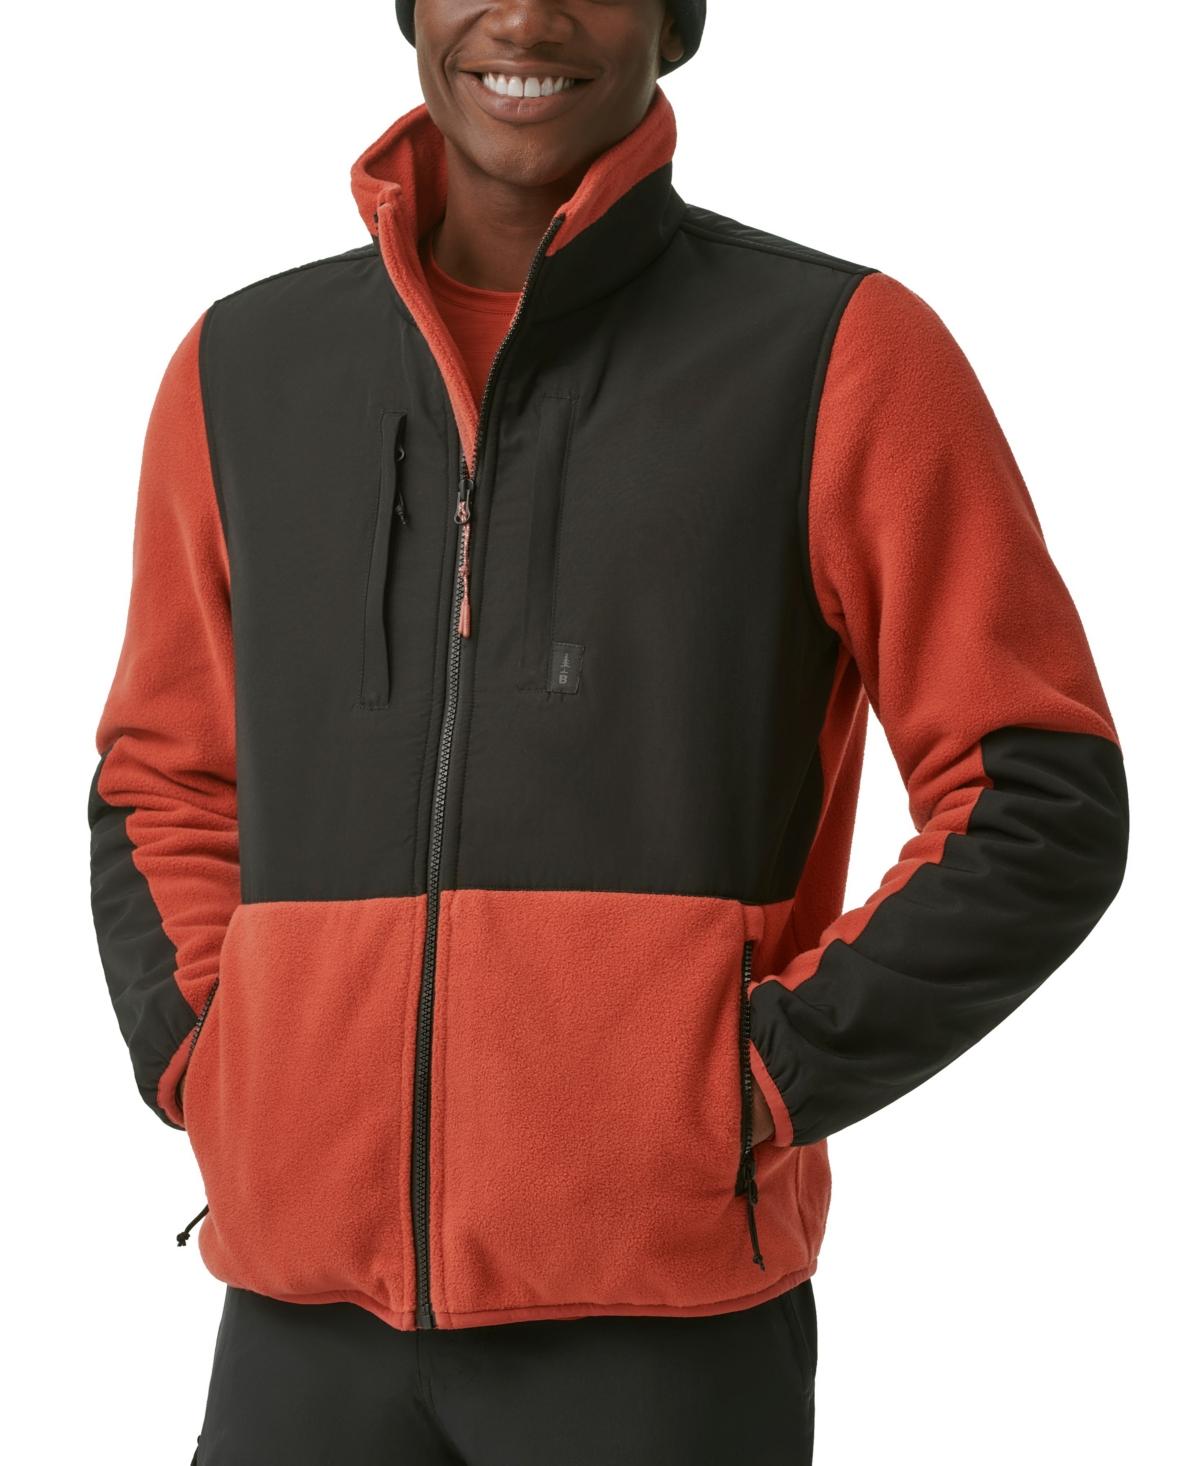 Bass Outdoor Men's B-warm Insulated Full-zip Fleece Jacket In Gargoyle